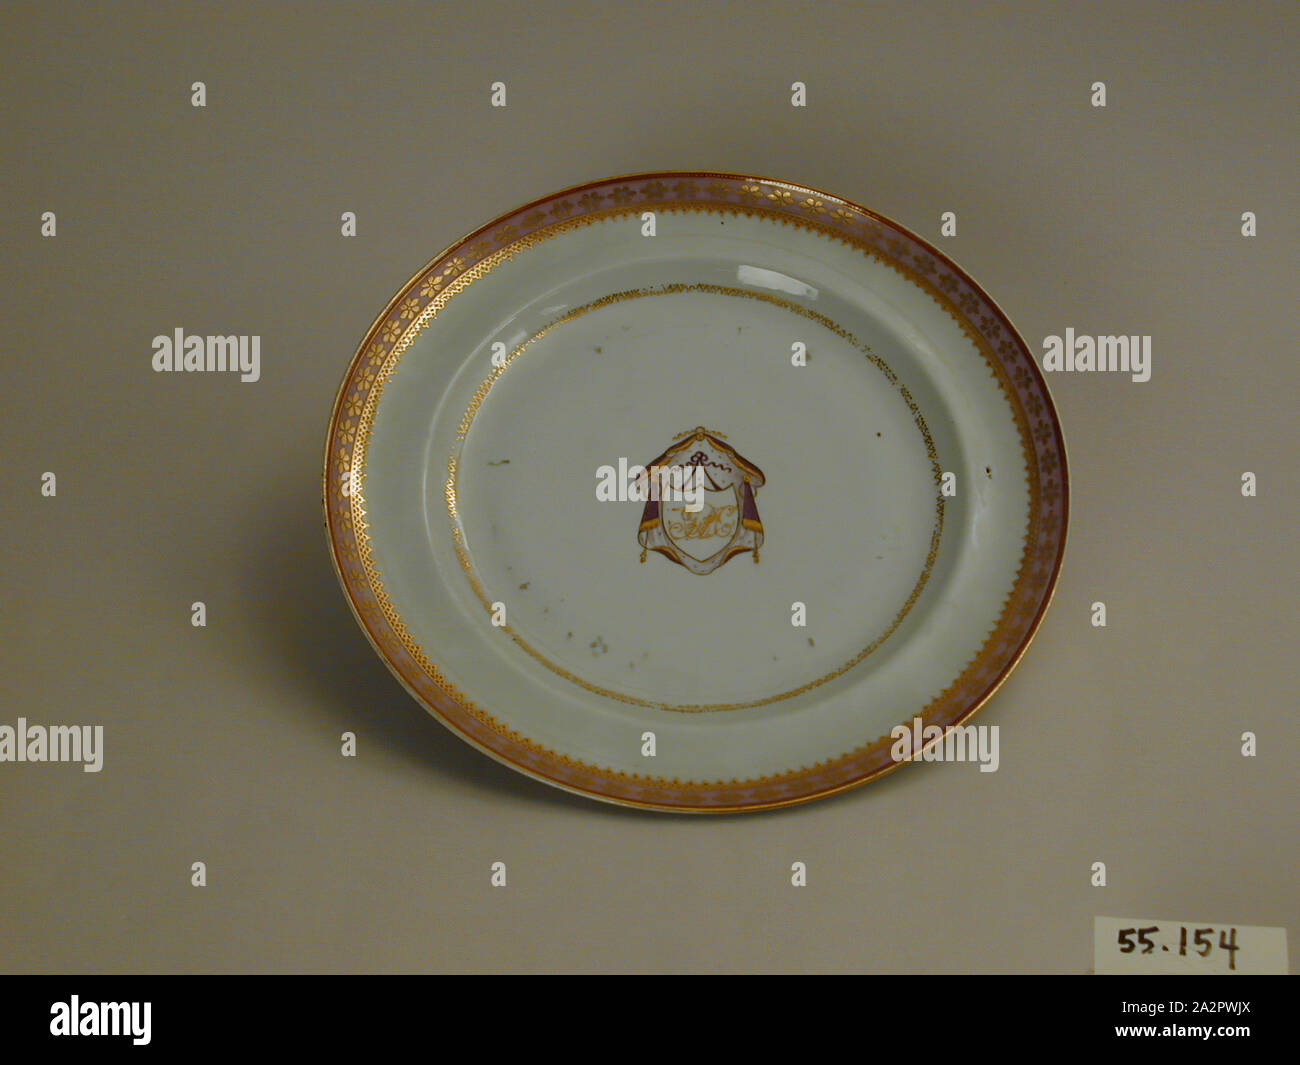 Inconnu (Chinois), la plaque, fin du xviiie siècle, émaillée porcelaine pâte dure avec émail polychrome et dorure, Hauteur x diamètre : 1 1/16 x 10 in. (2,7 x 25,4 cm Banque D'Images